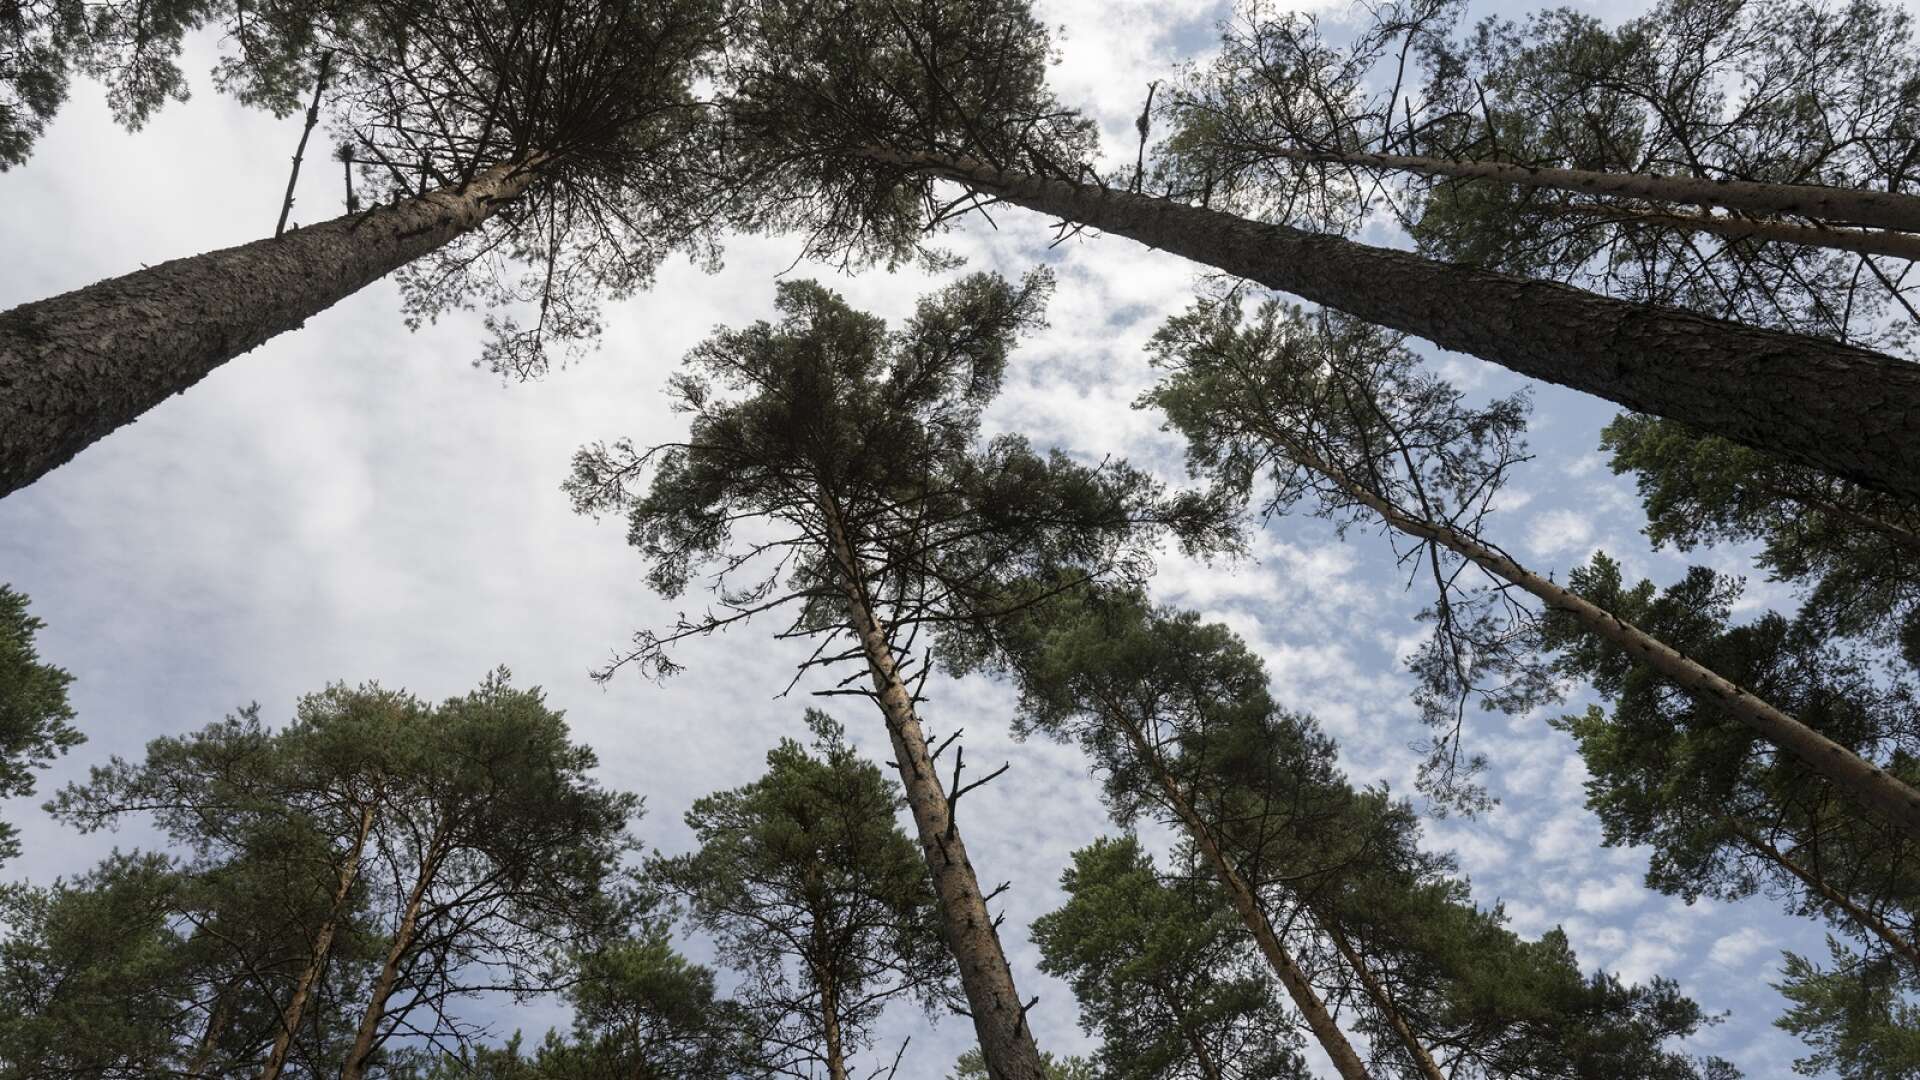 Förslagsvis skulle man kunna utveckla liknande system där man ekonomiskt kompenseras för att avsätta skog till biologisk mångfald, skriver Erik Forsberg och Daniel Andersson.